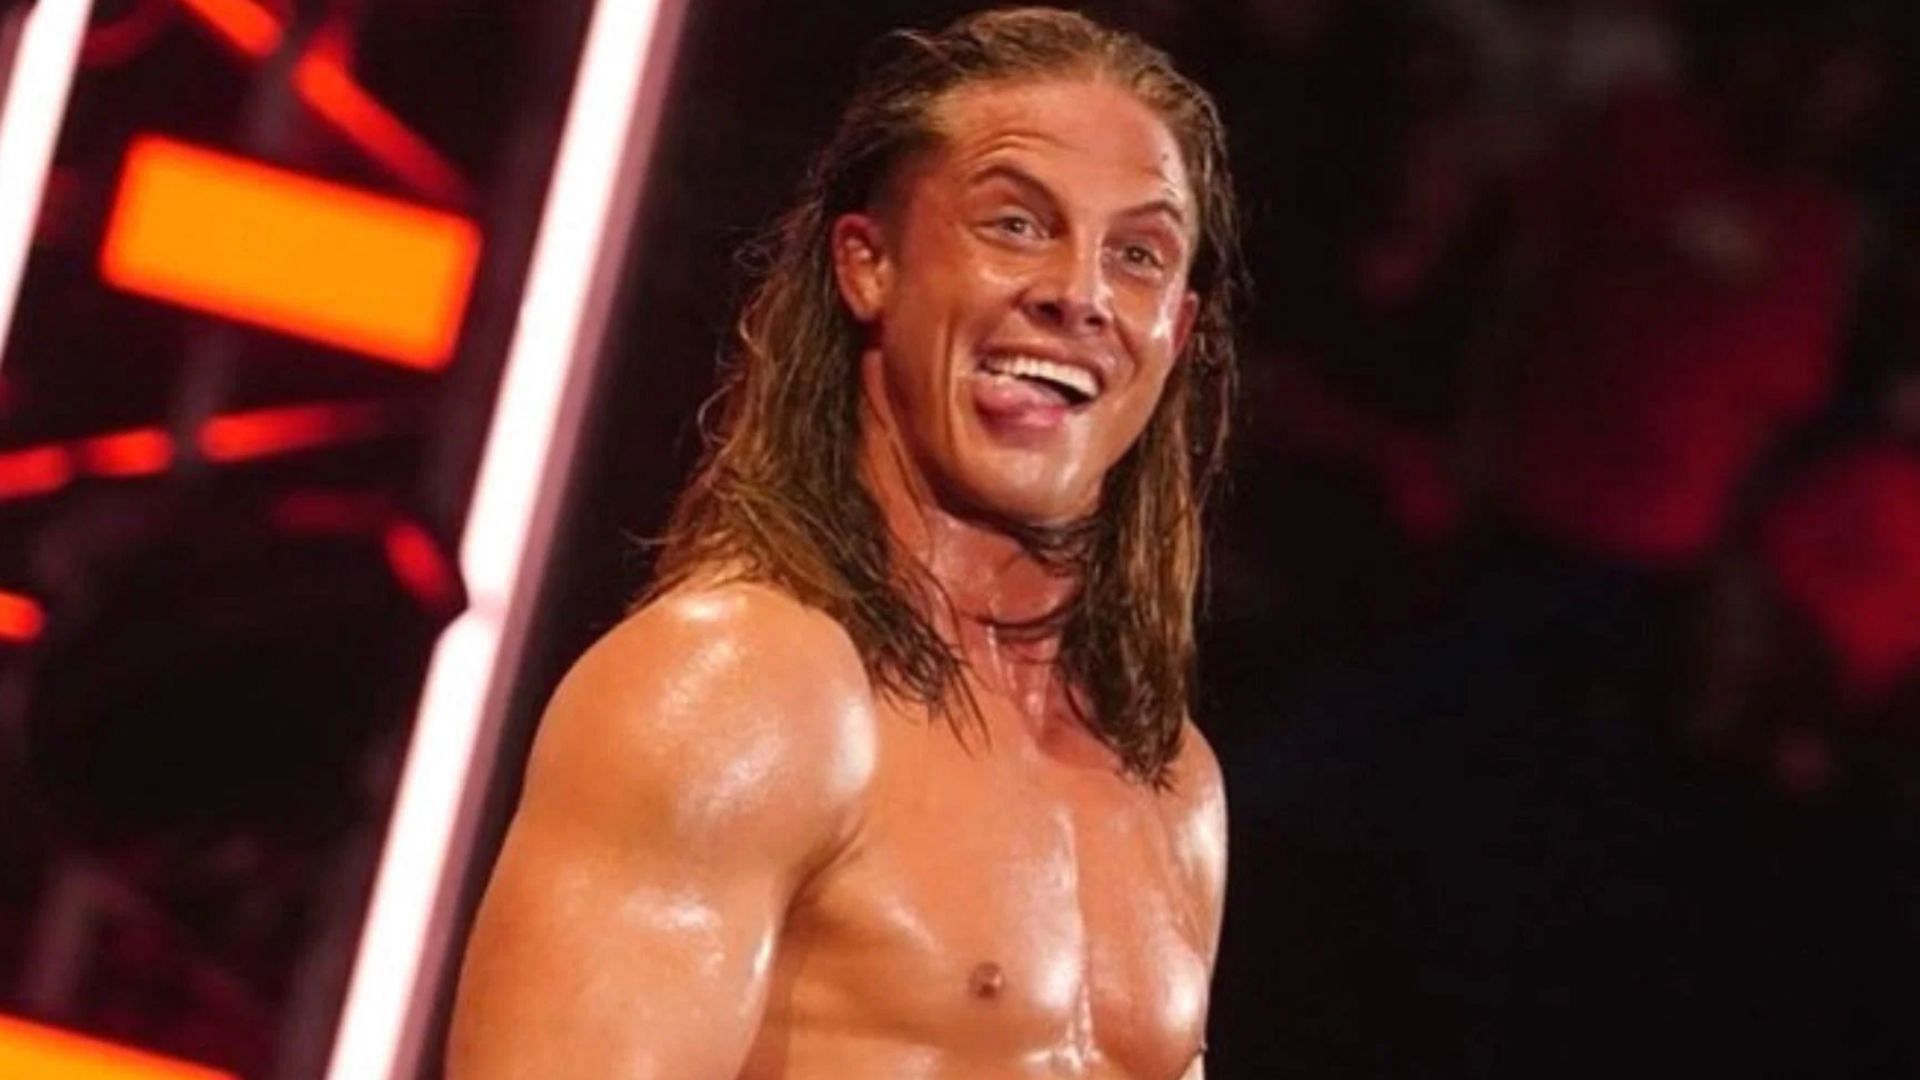 Matt Riddle defeated Sami Zayn this week on WWE RAW